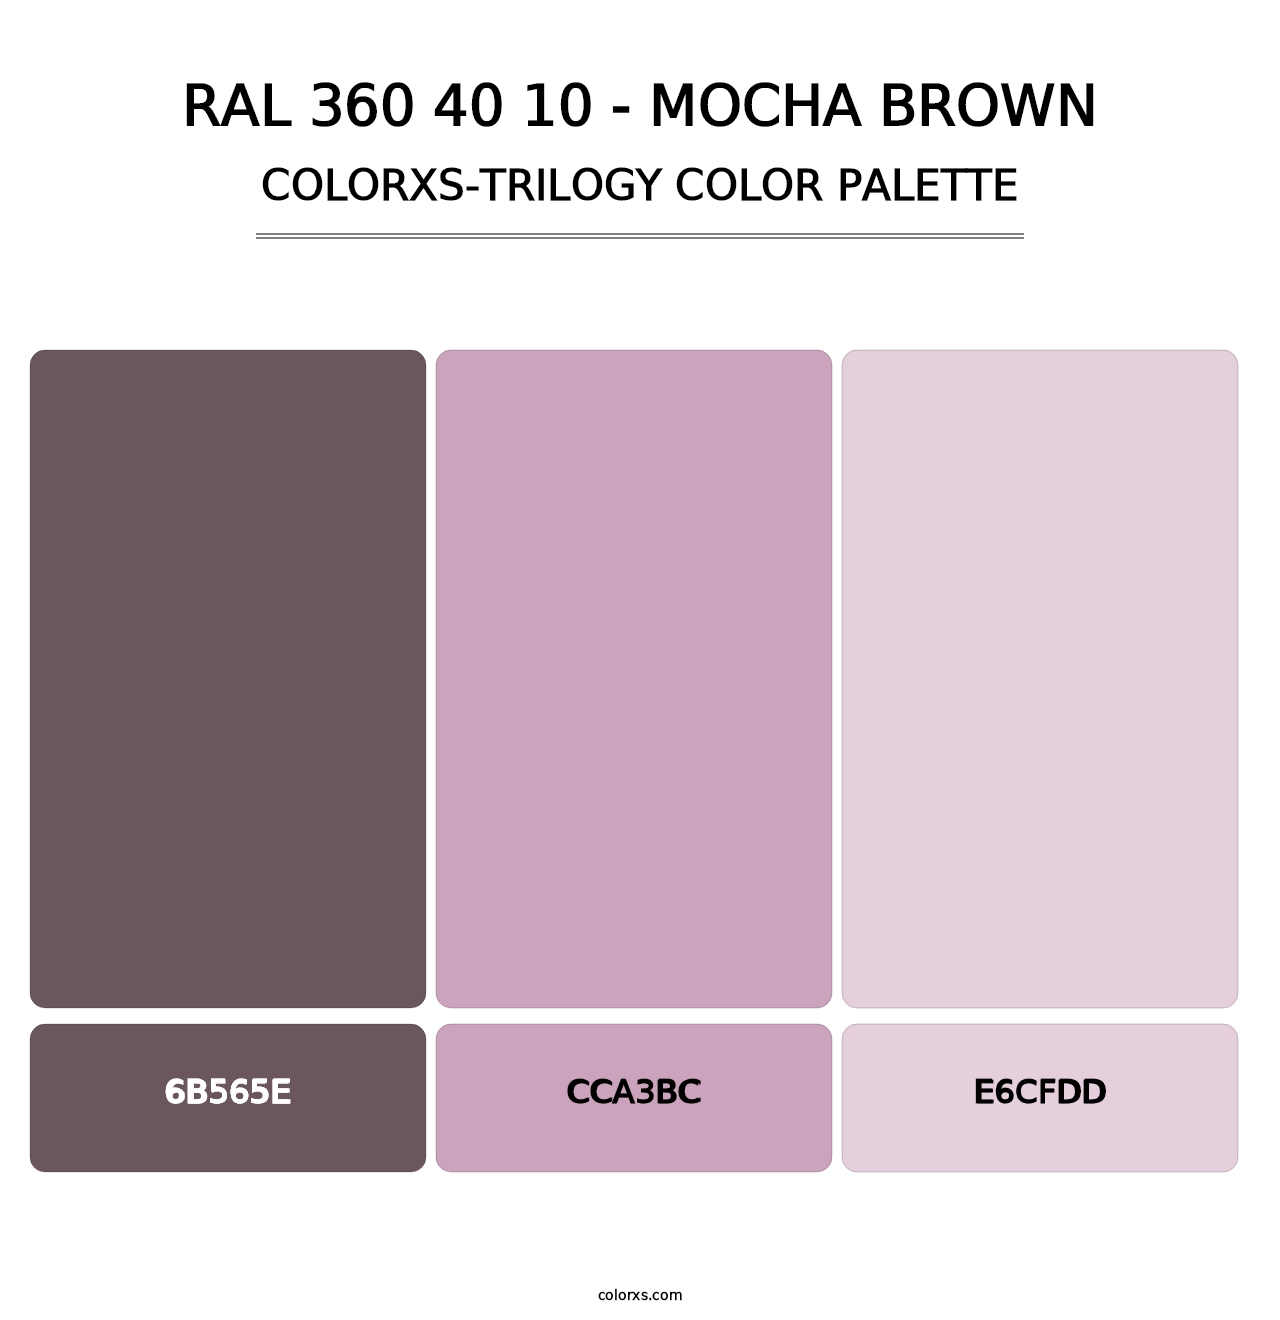 RAL 360 40 10 - Mocha Brown - Colorxs Trilogy Palette